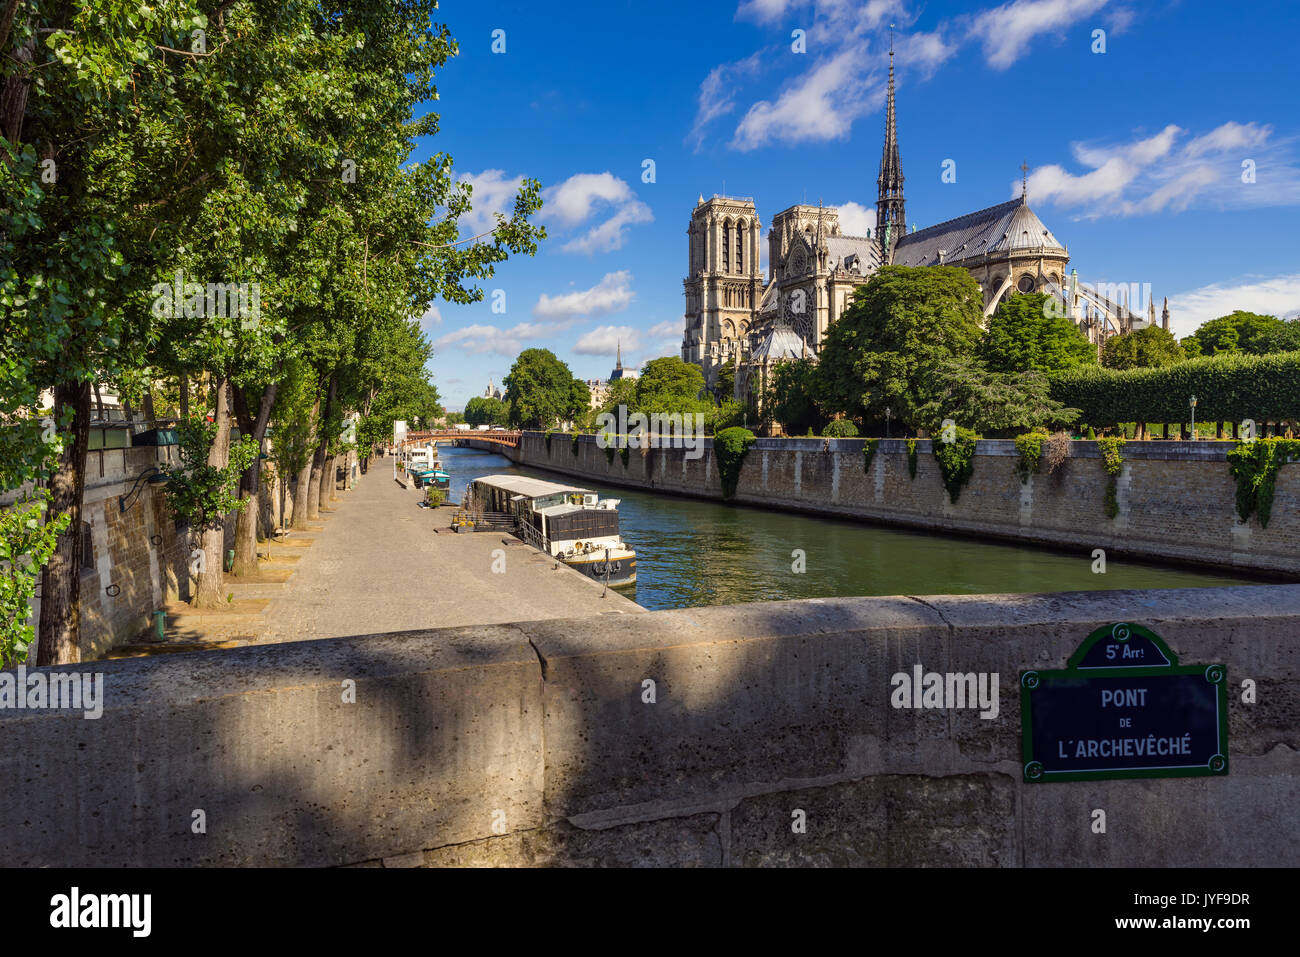 La cathédrale Notre Dame de Paris sur l'Ile de La Cité avec la Seine en été. Pont de l'Archeveche, Paris, France Banque D'Images